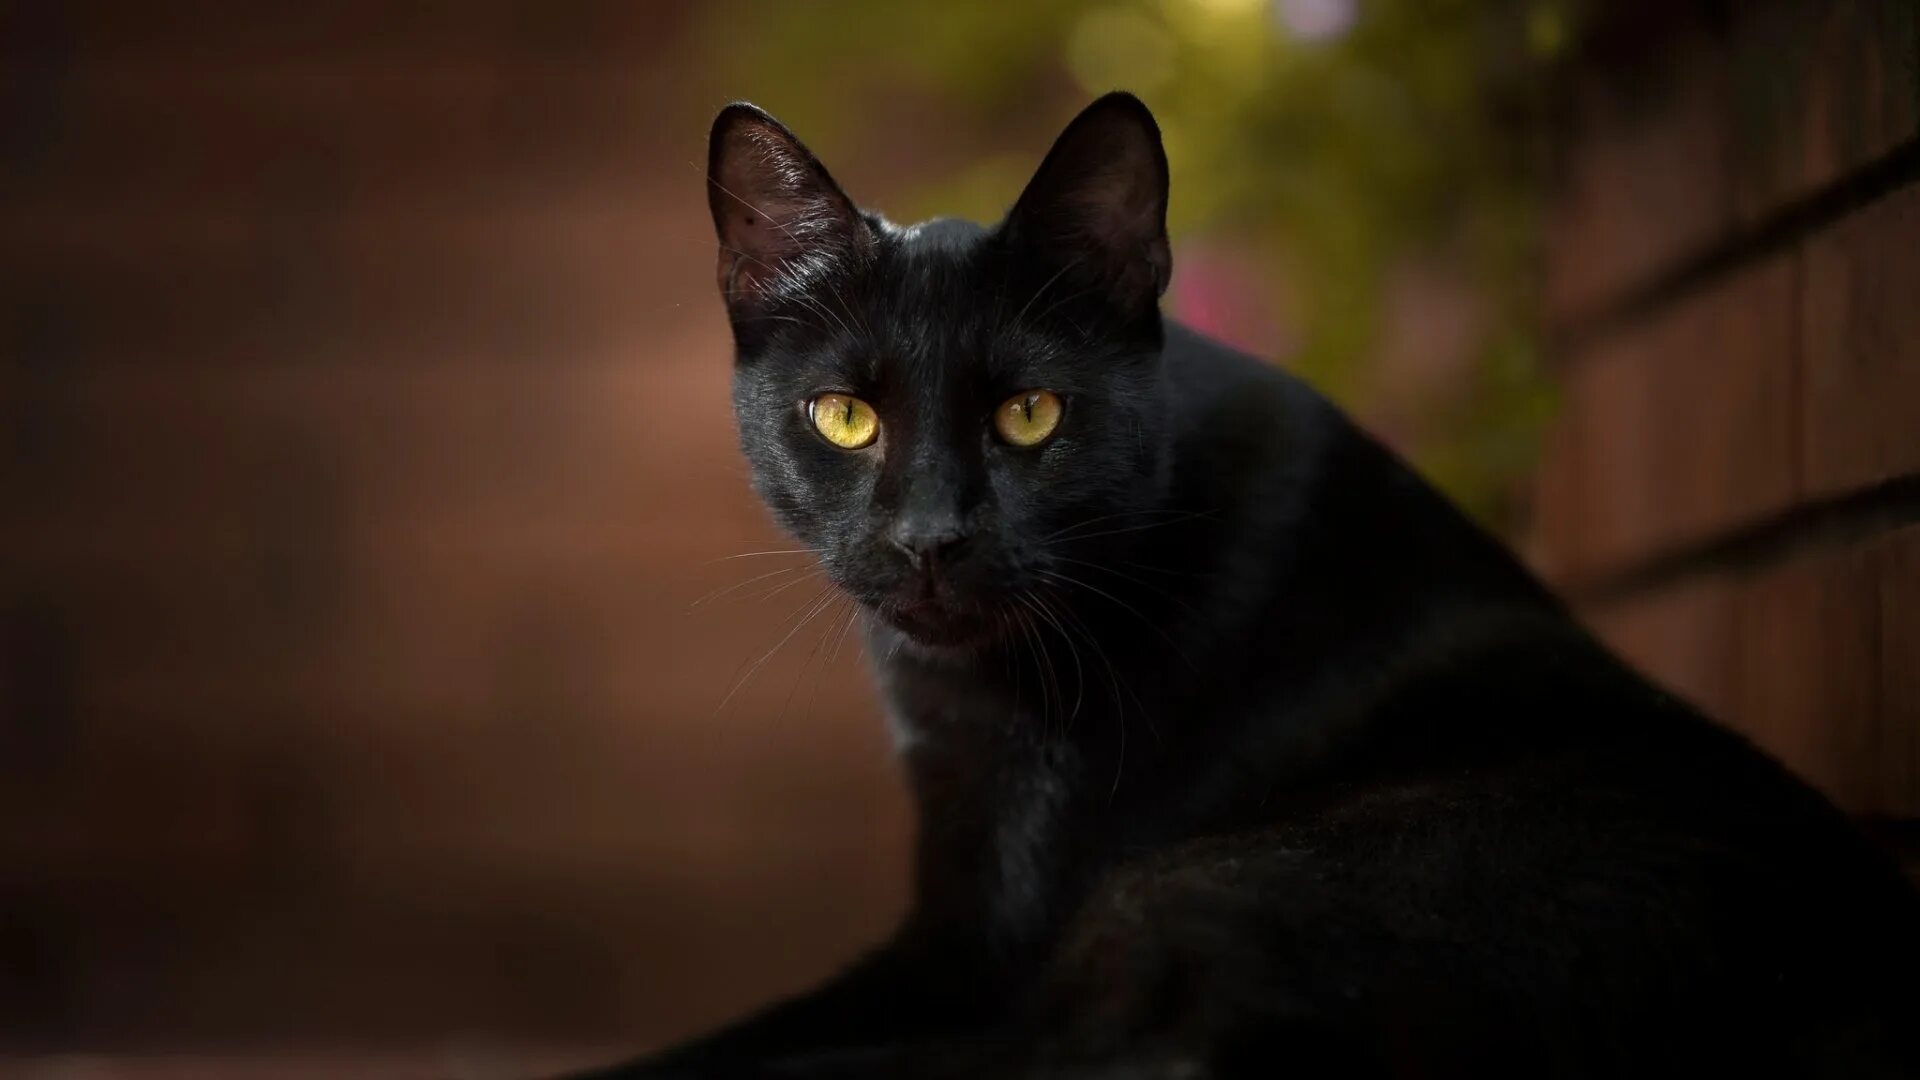 Кошка Гавана черная. Кот Ориентал черный. Бурманская кошка черная. Бомбейская кошка. Черные кошки 10